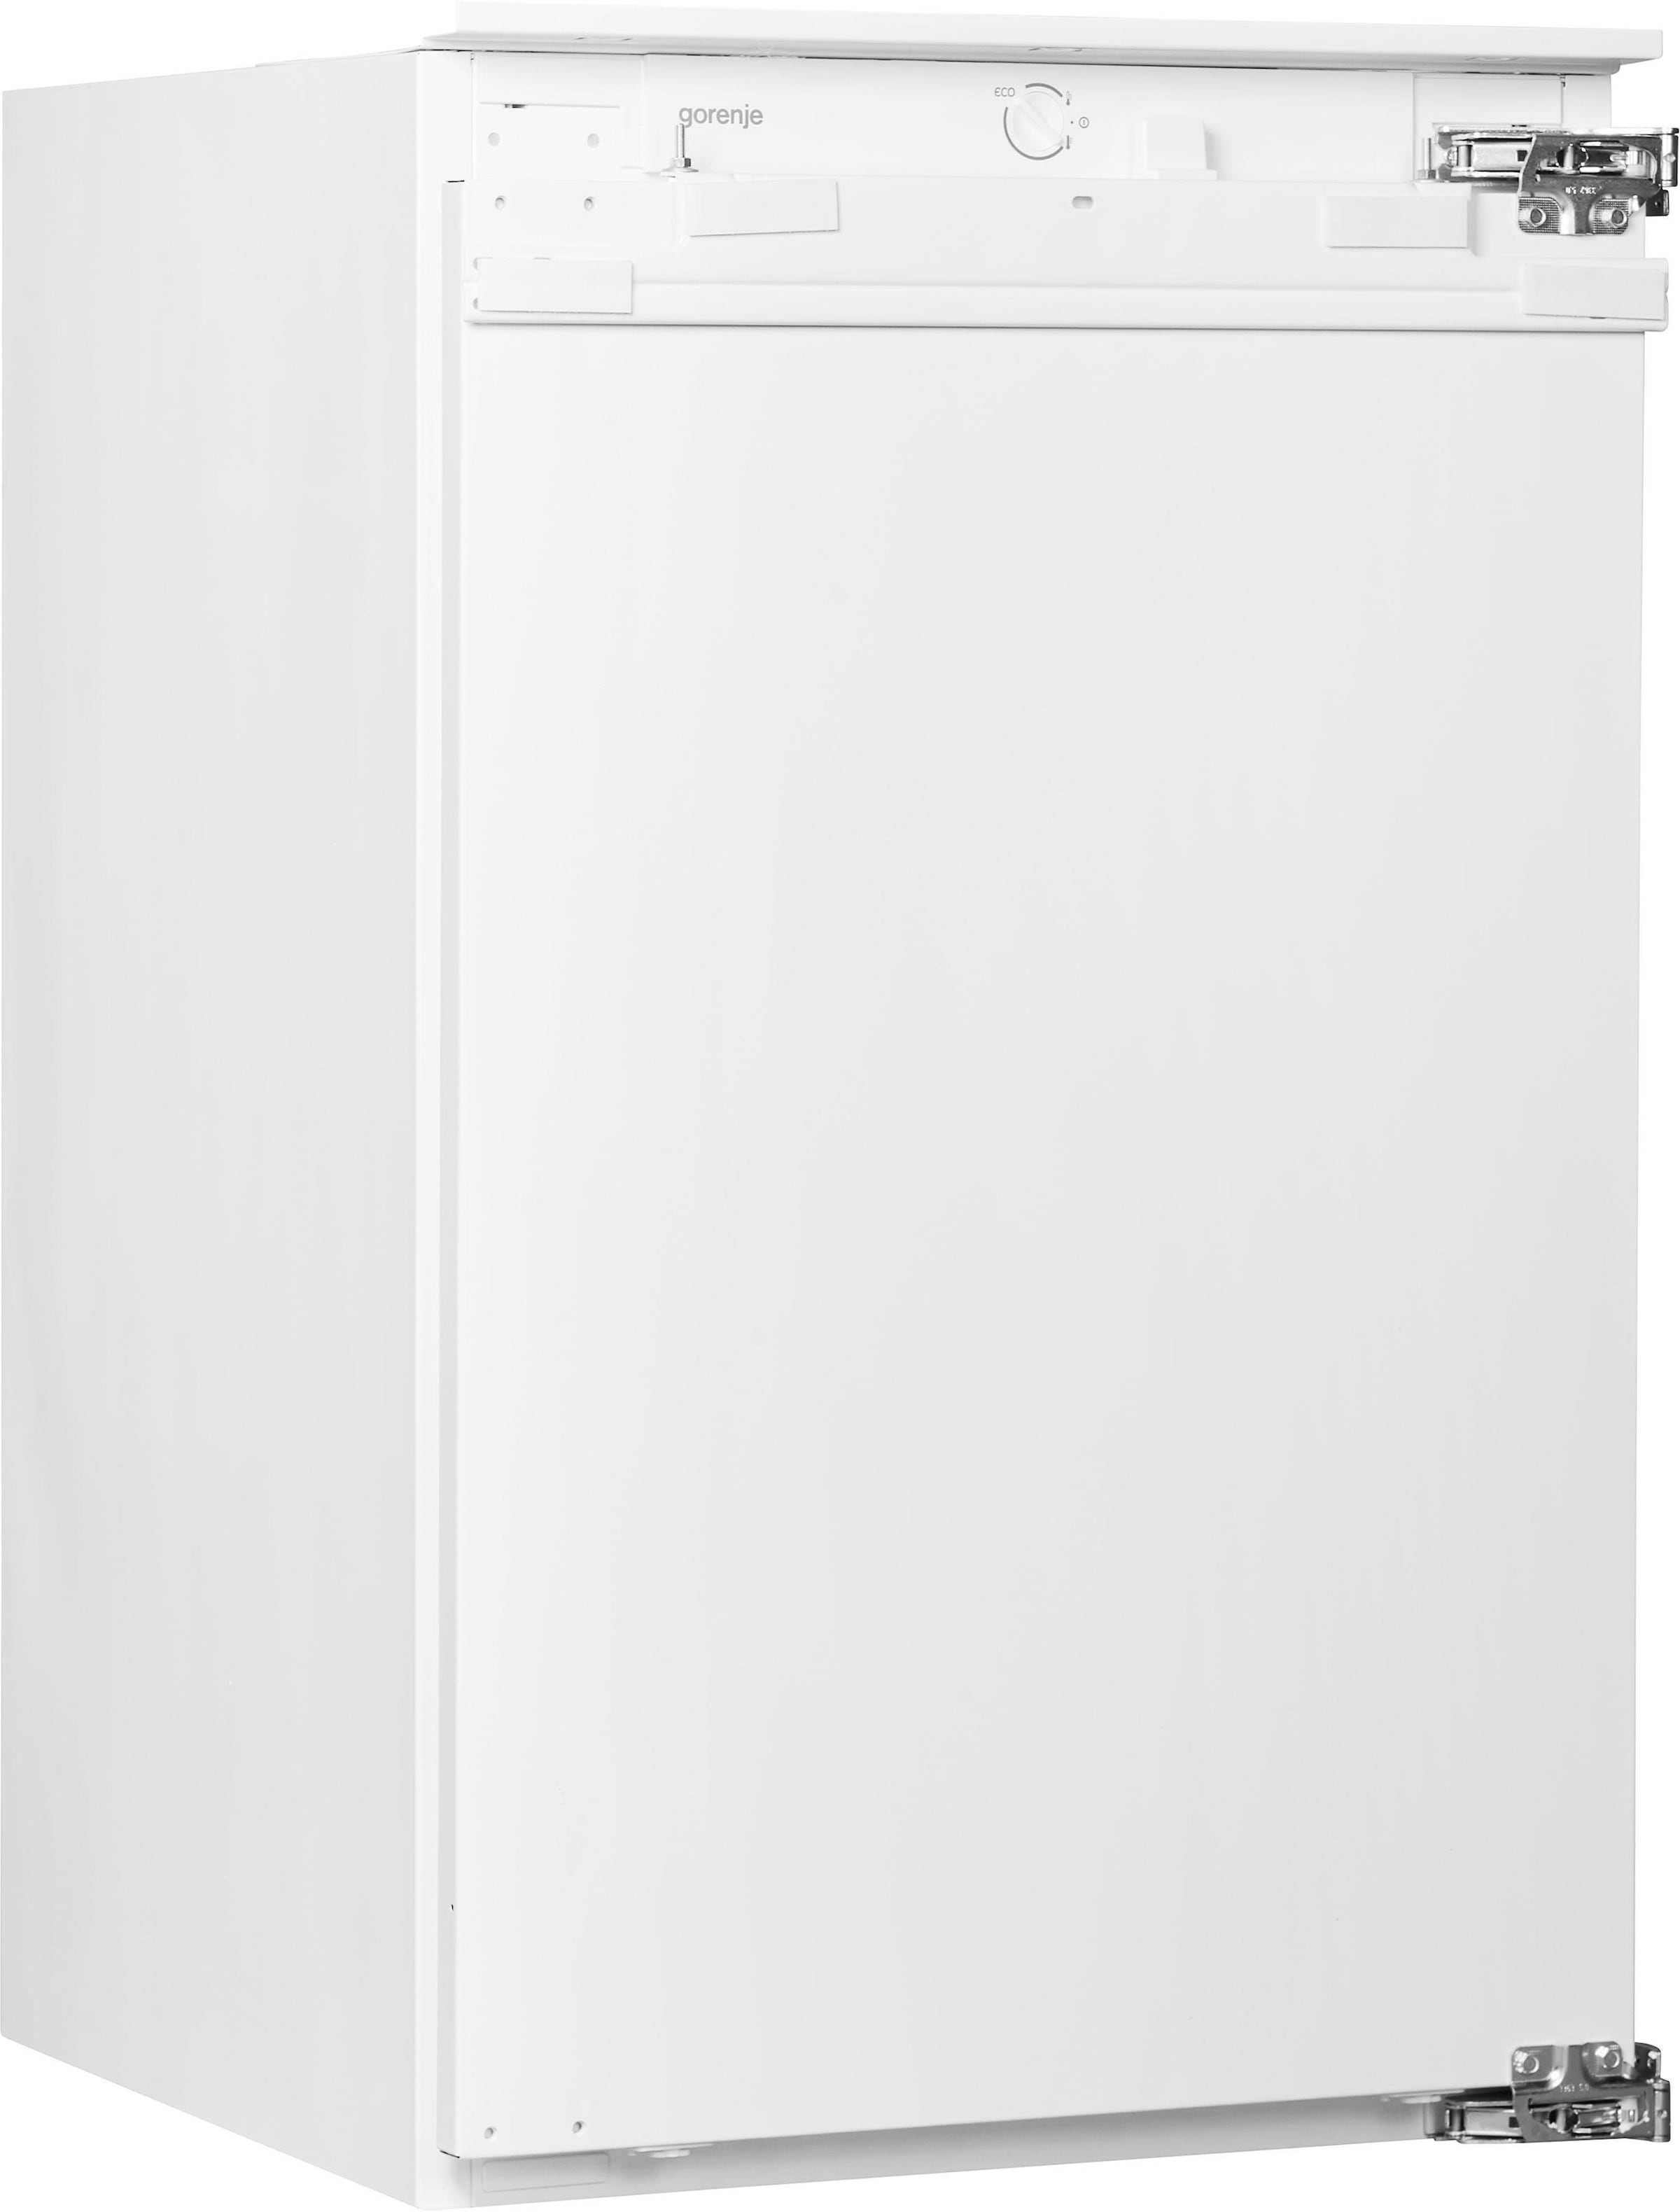 GORENJE Einbaukühlschrank »RBI2092E1«, RBI2092E1, 87,5 cm hoch, 54 cm breit, integrierbar